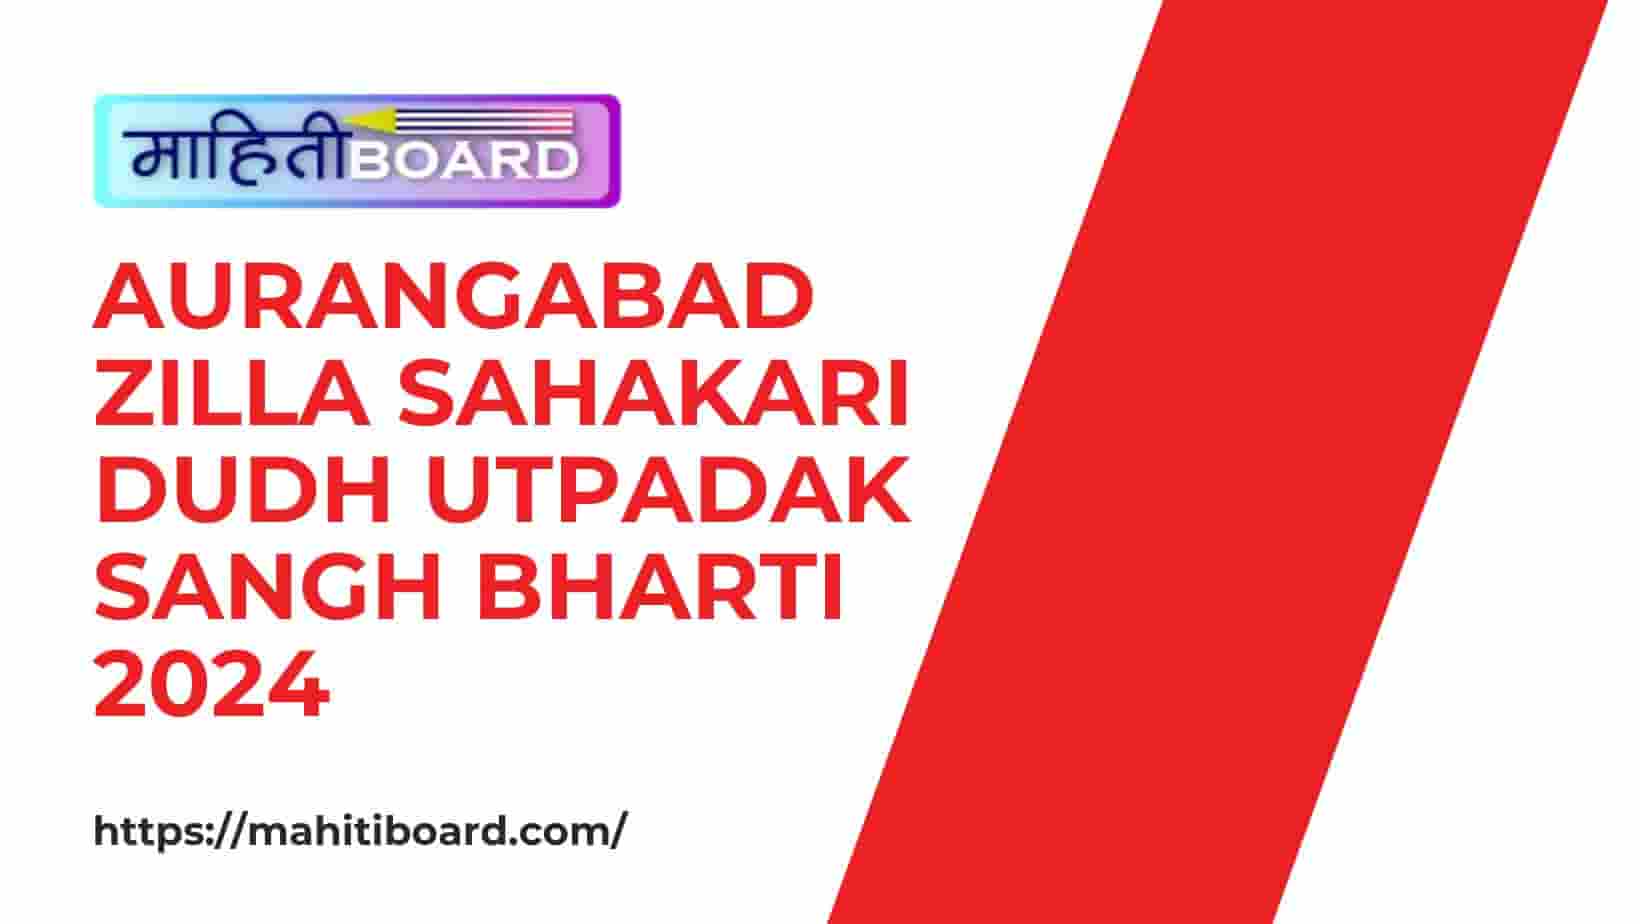 Aurangabad Zilla Sahakari Dudh Utpadak Sangh Bharti 2024